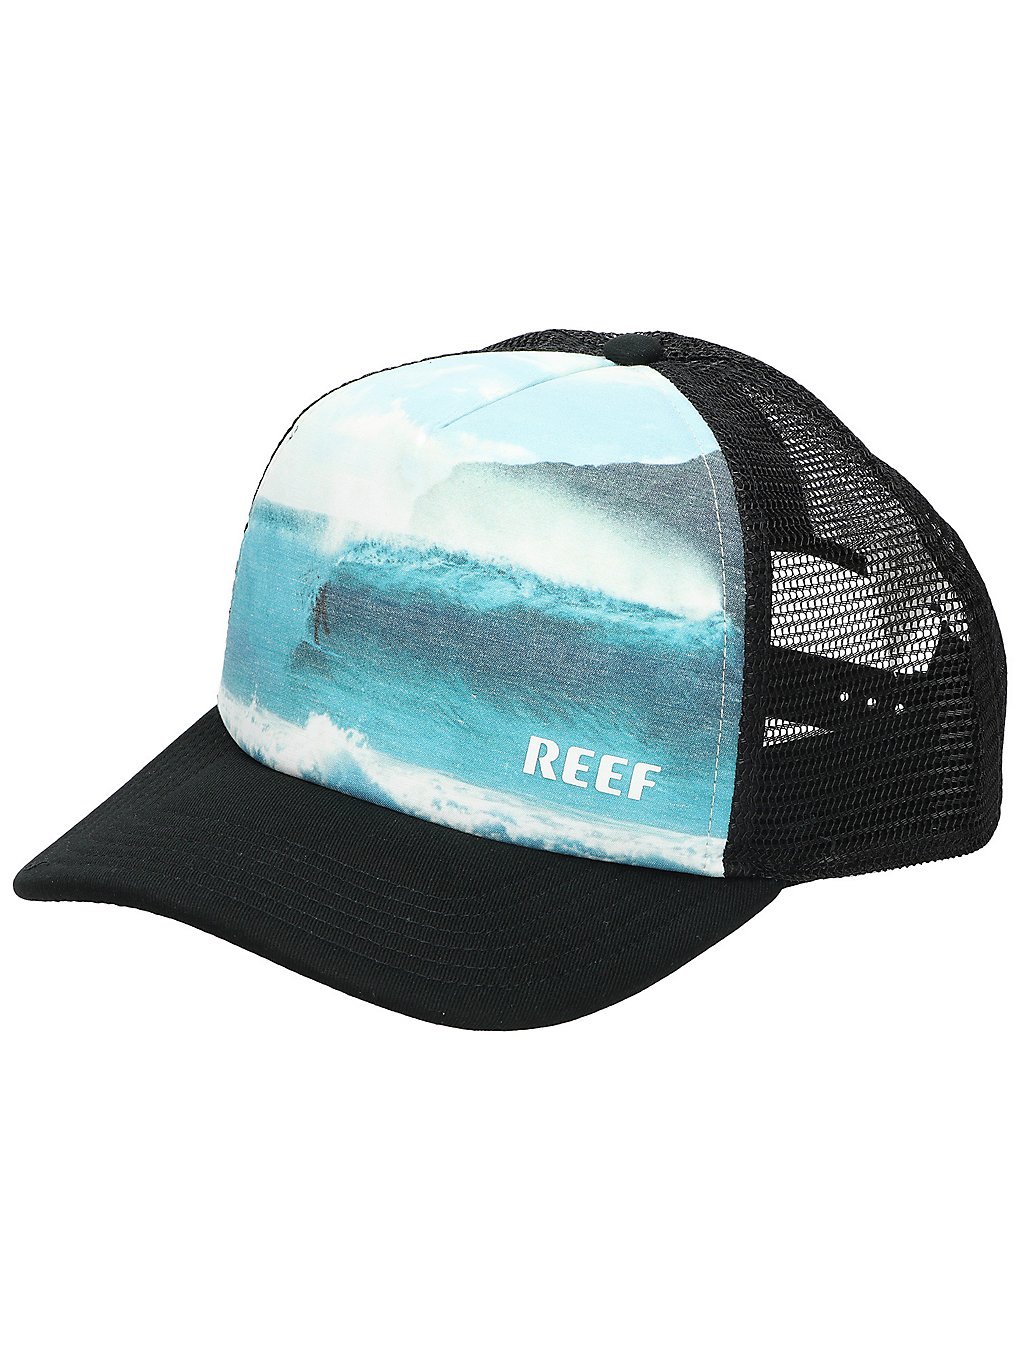 Reef channel cap musta, reef